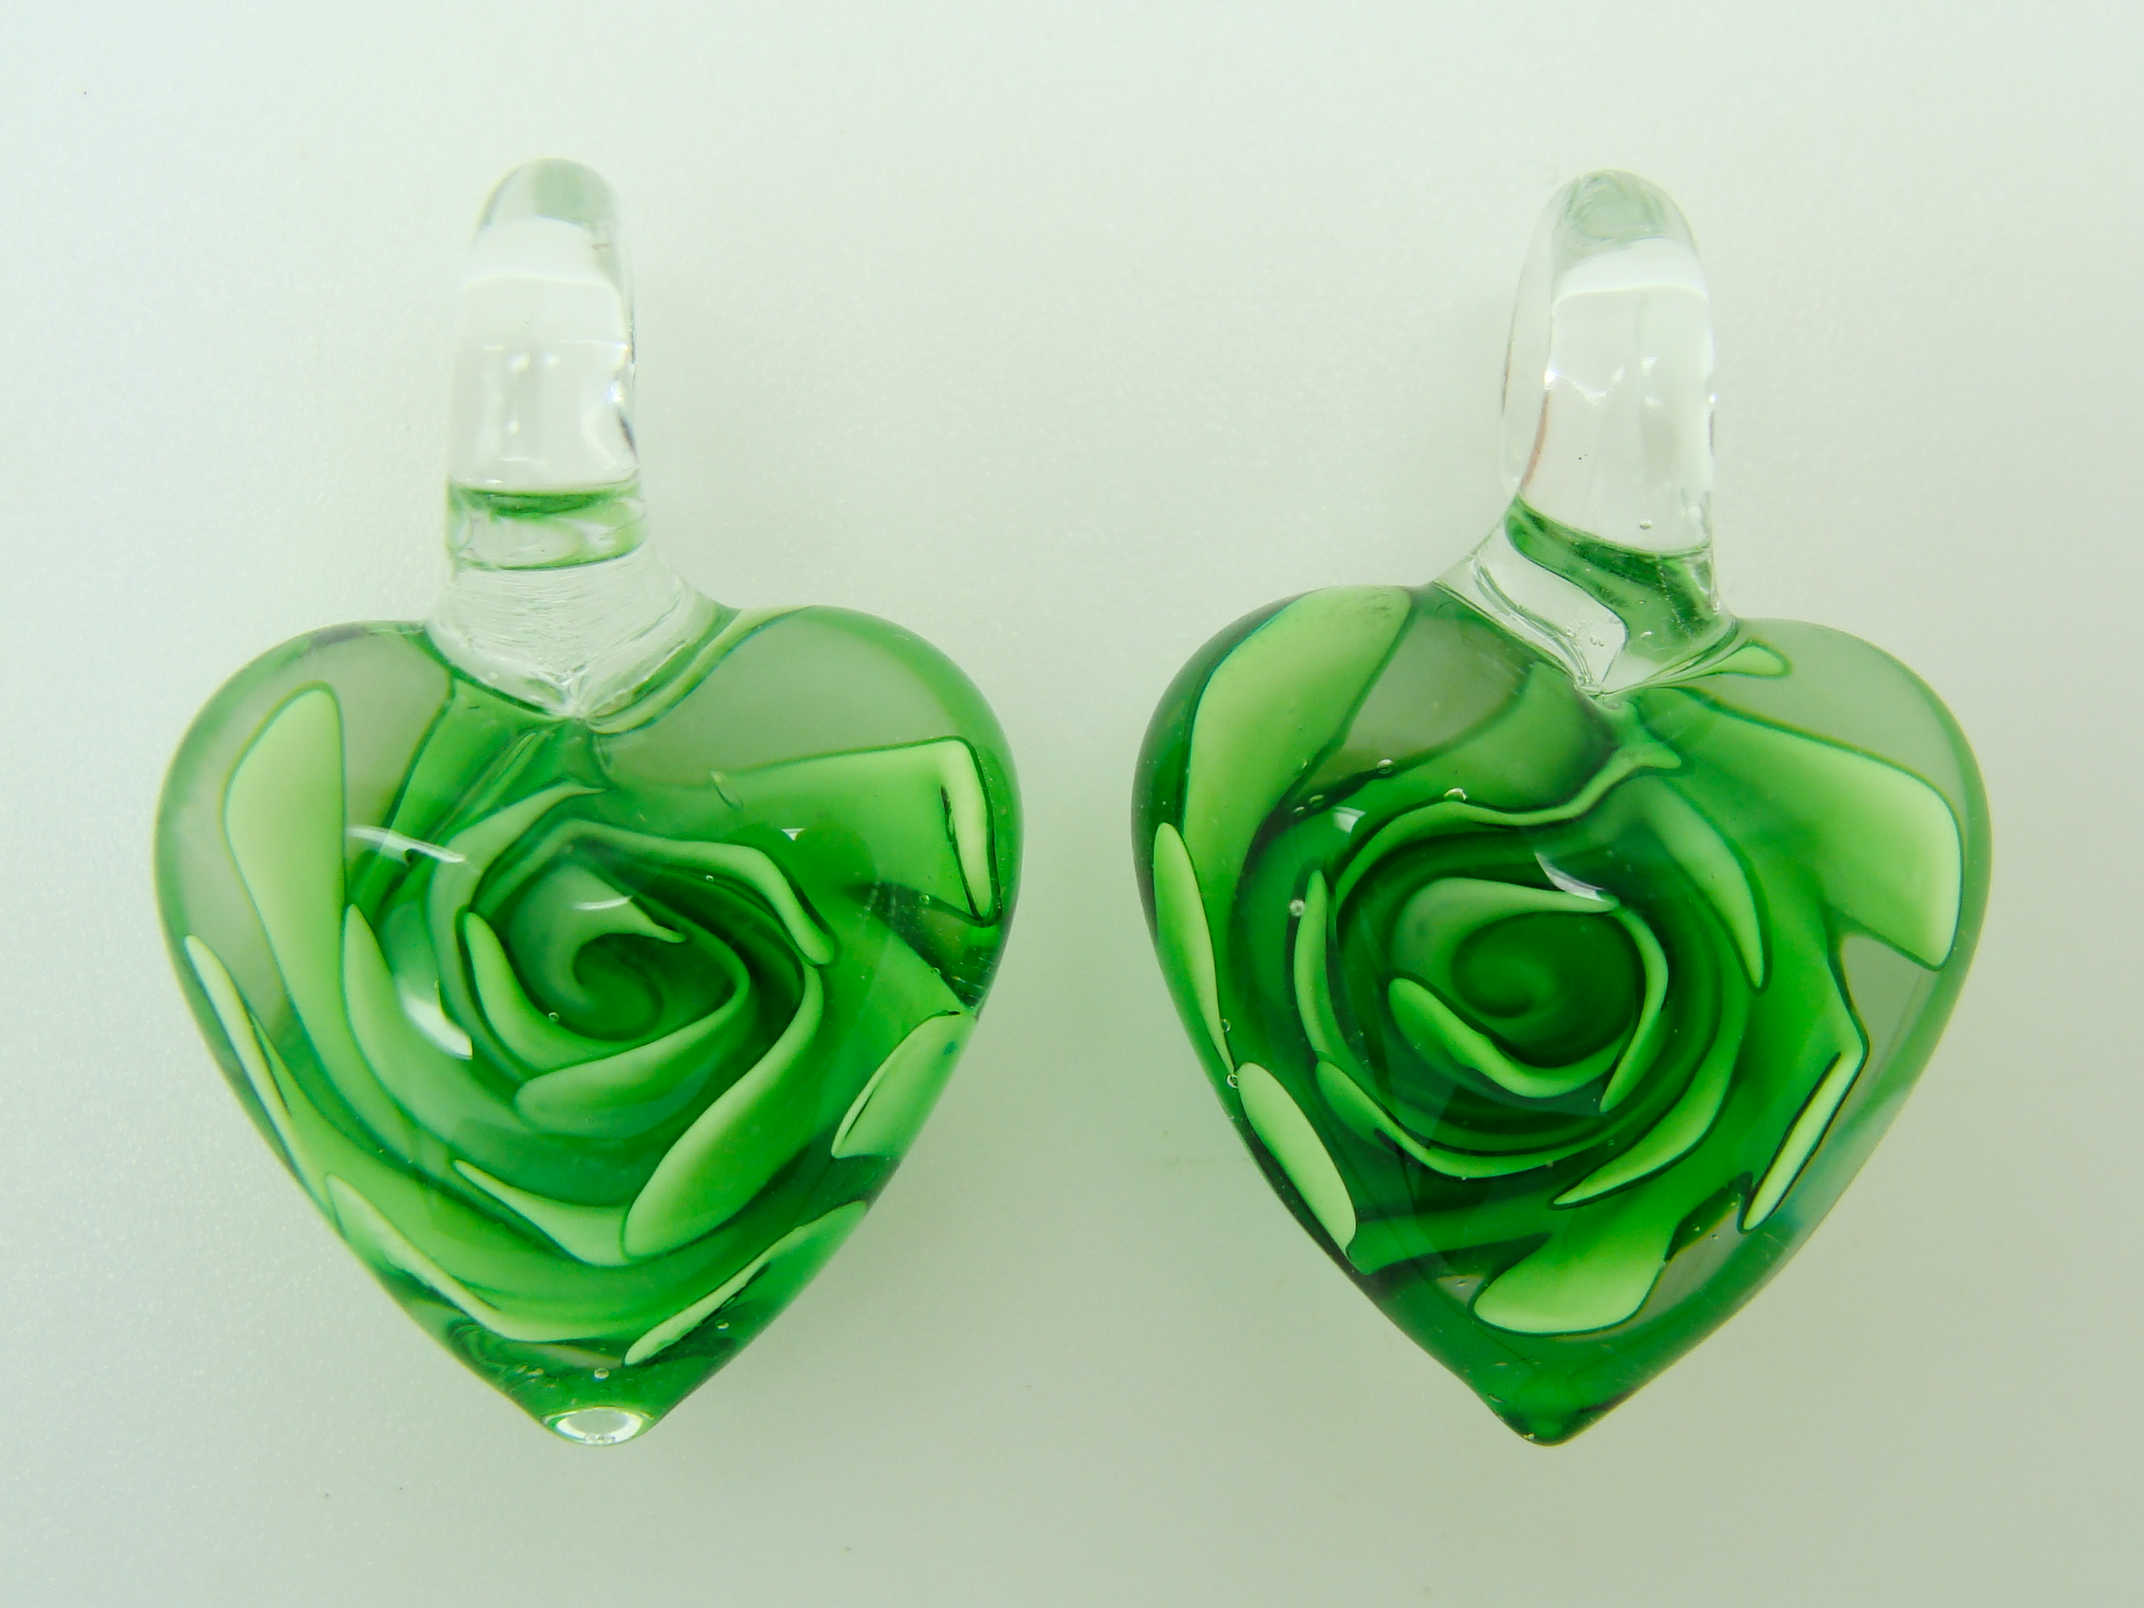 Pend-181-4 5 2 pendentifs coeur vert